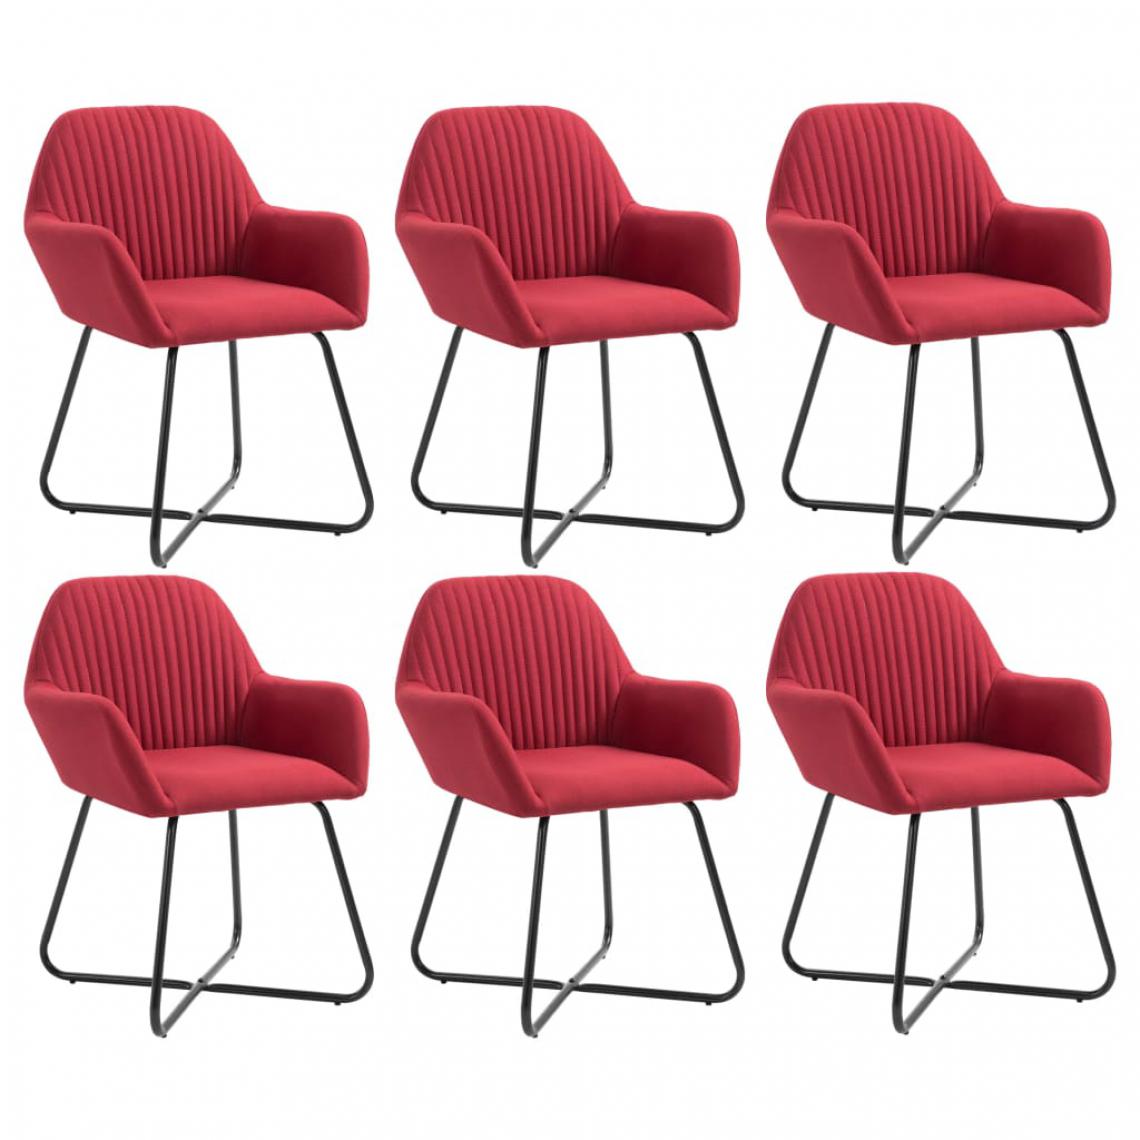 Chunhelife - Chaises de salle à manger 6 pcs Rouge bordeaux Tissu - Chaises